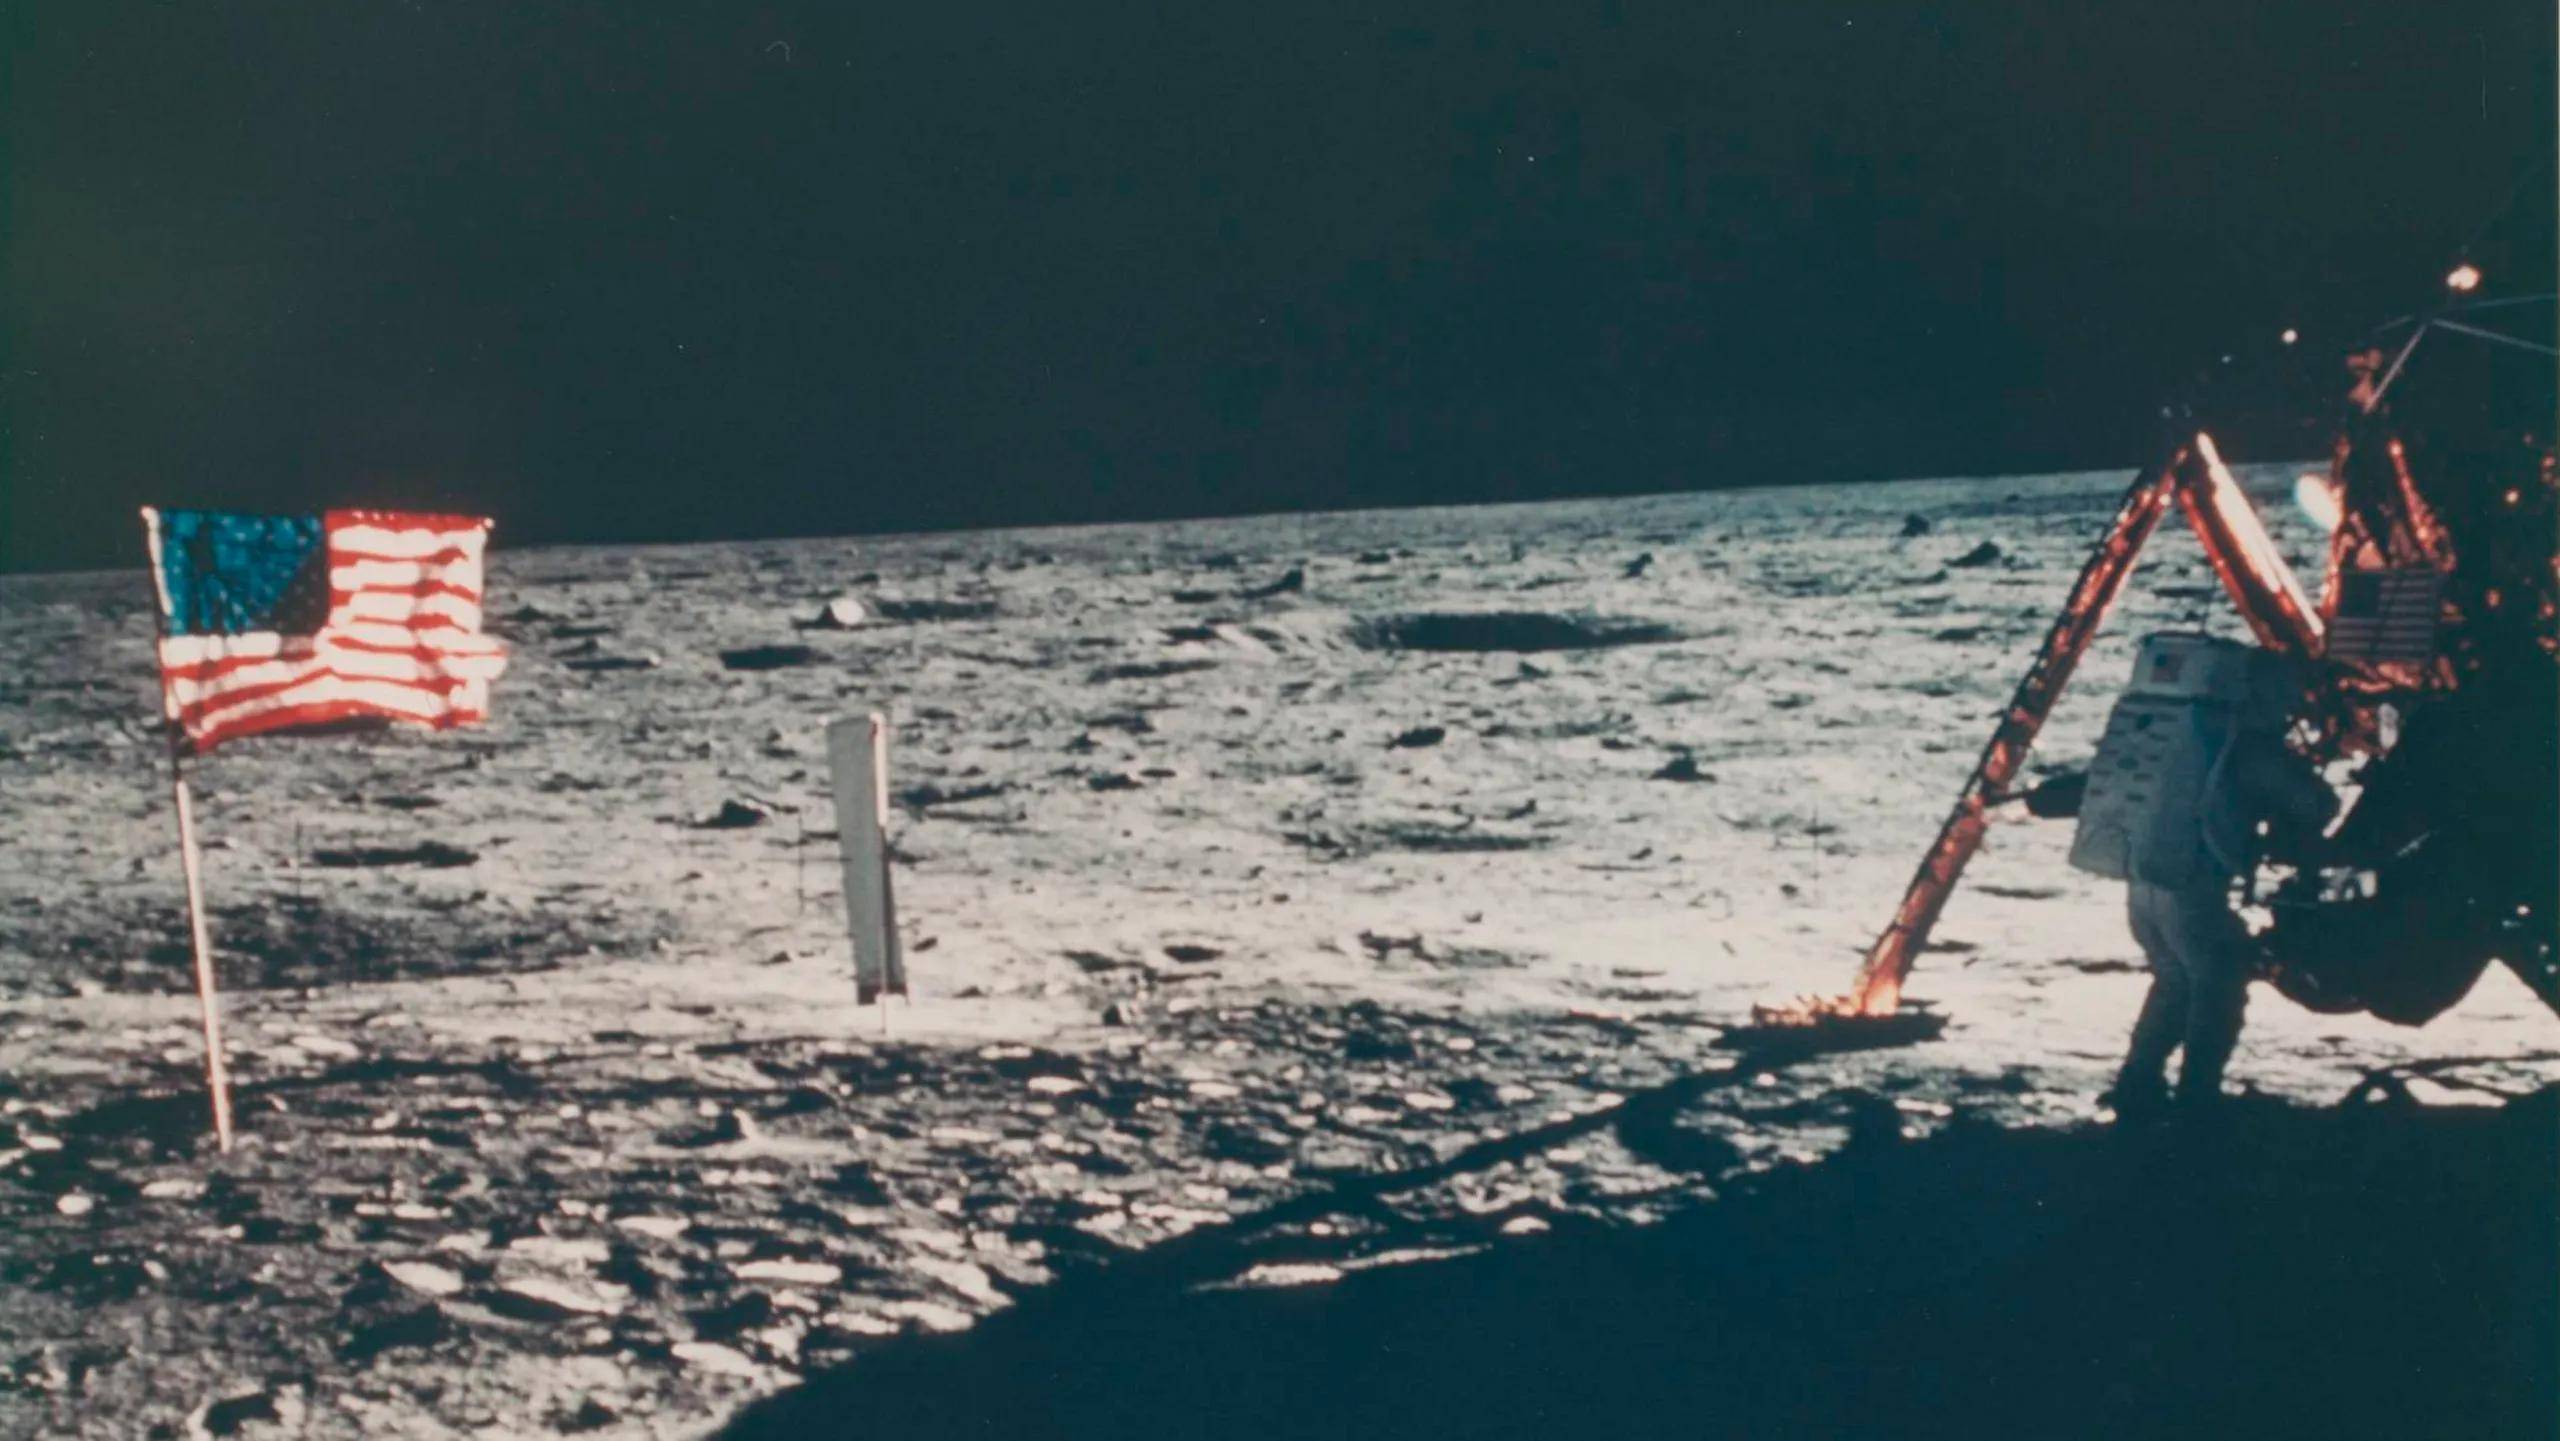 佳士得将拍卖唯一一张记录尼尔·阿姆斯特朗月球行走的照片